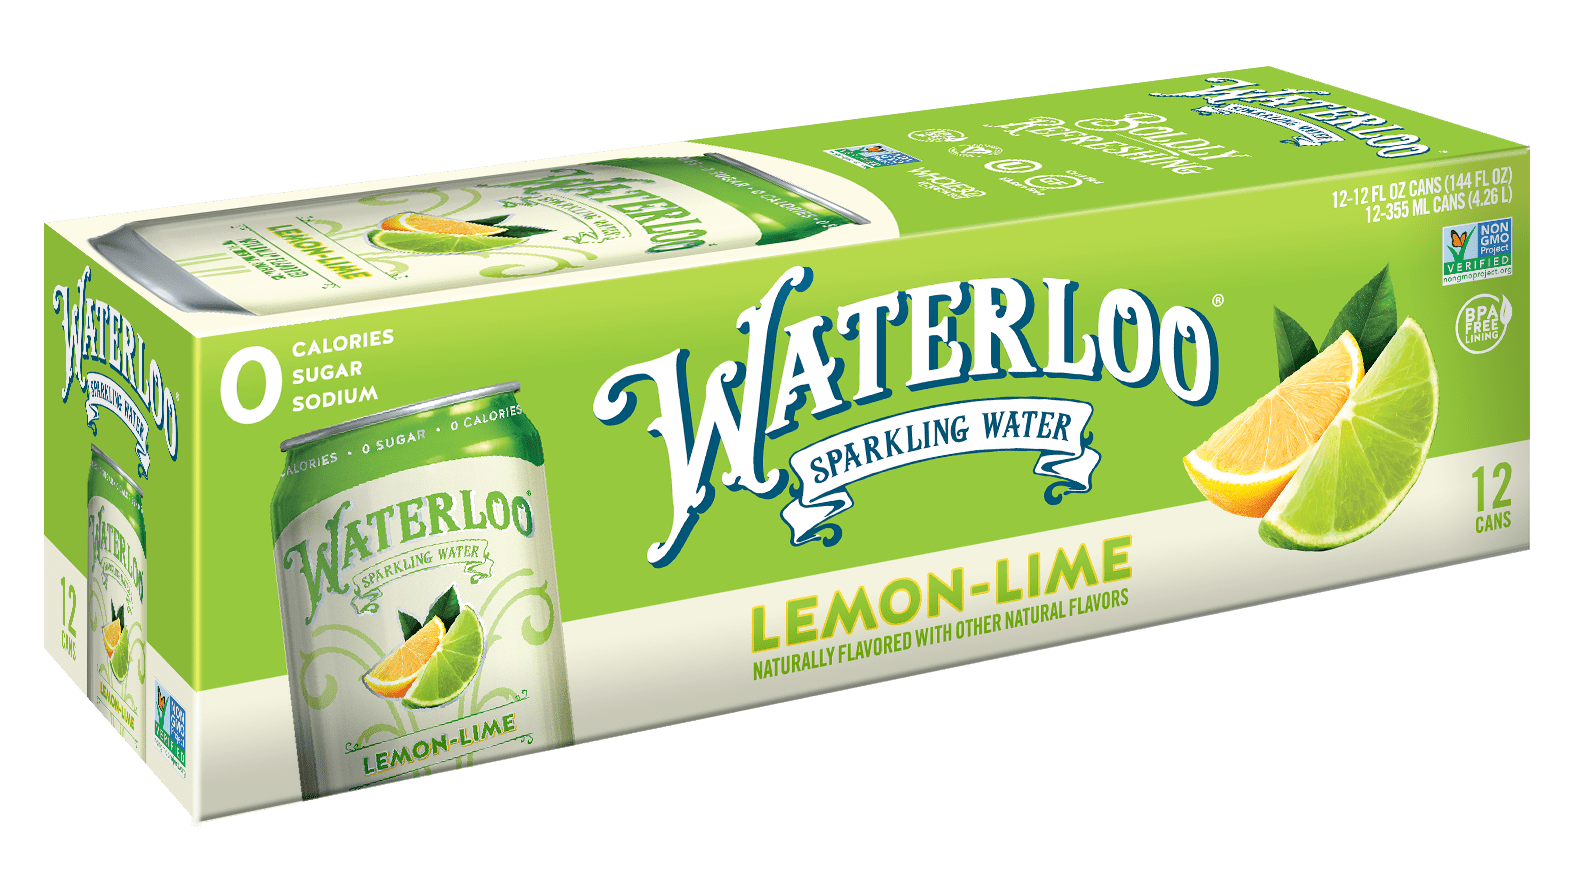 Waterloo Lemon-Lime Sparkling Water 2 innerpacks per case 144.0 fl